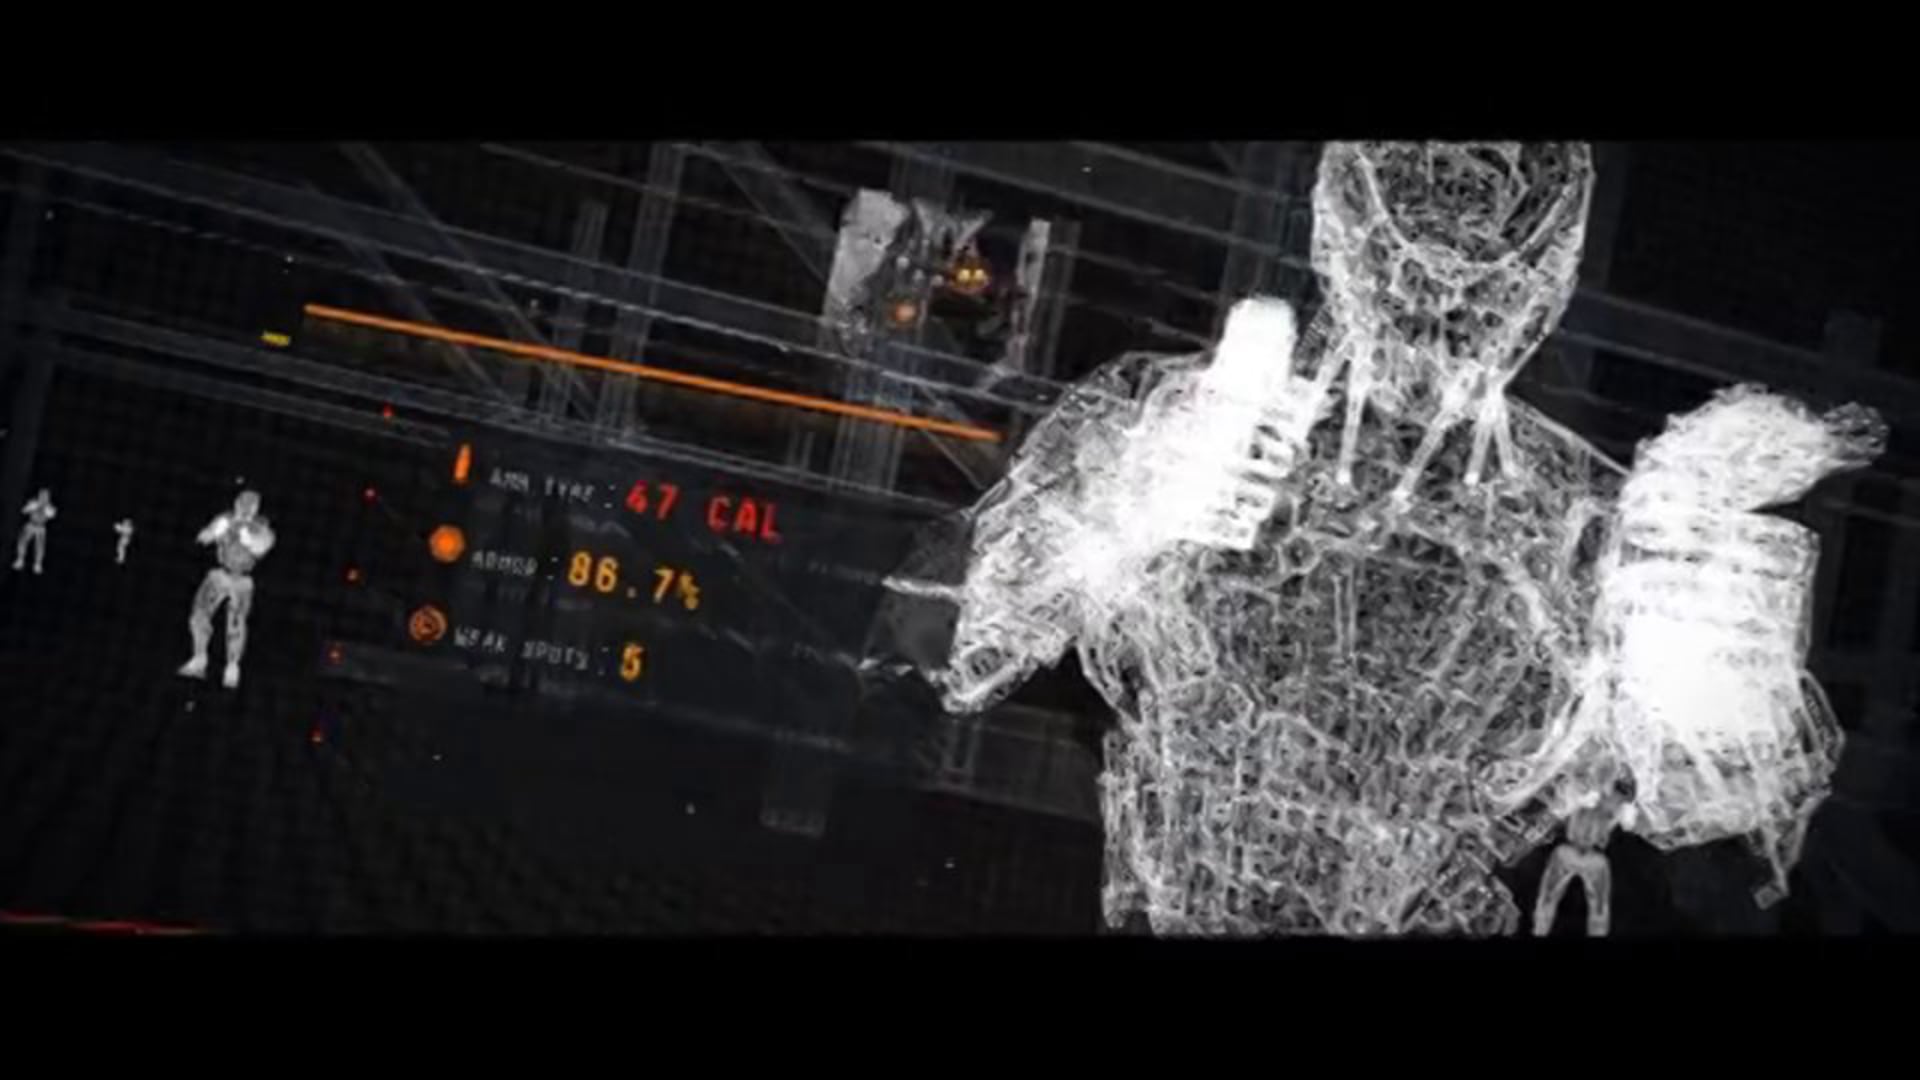 Robocop (2014) Montage (UI + HUD + Screen VFX